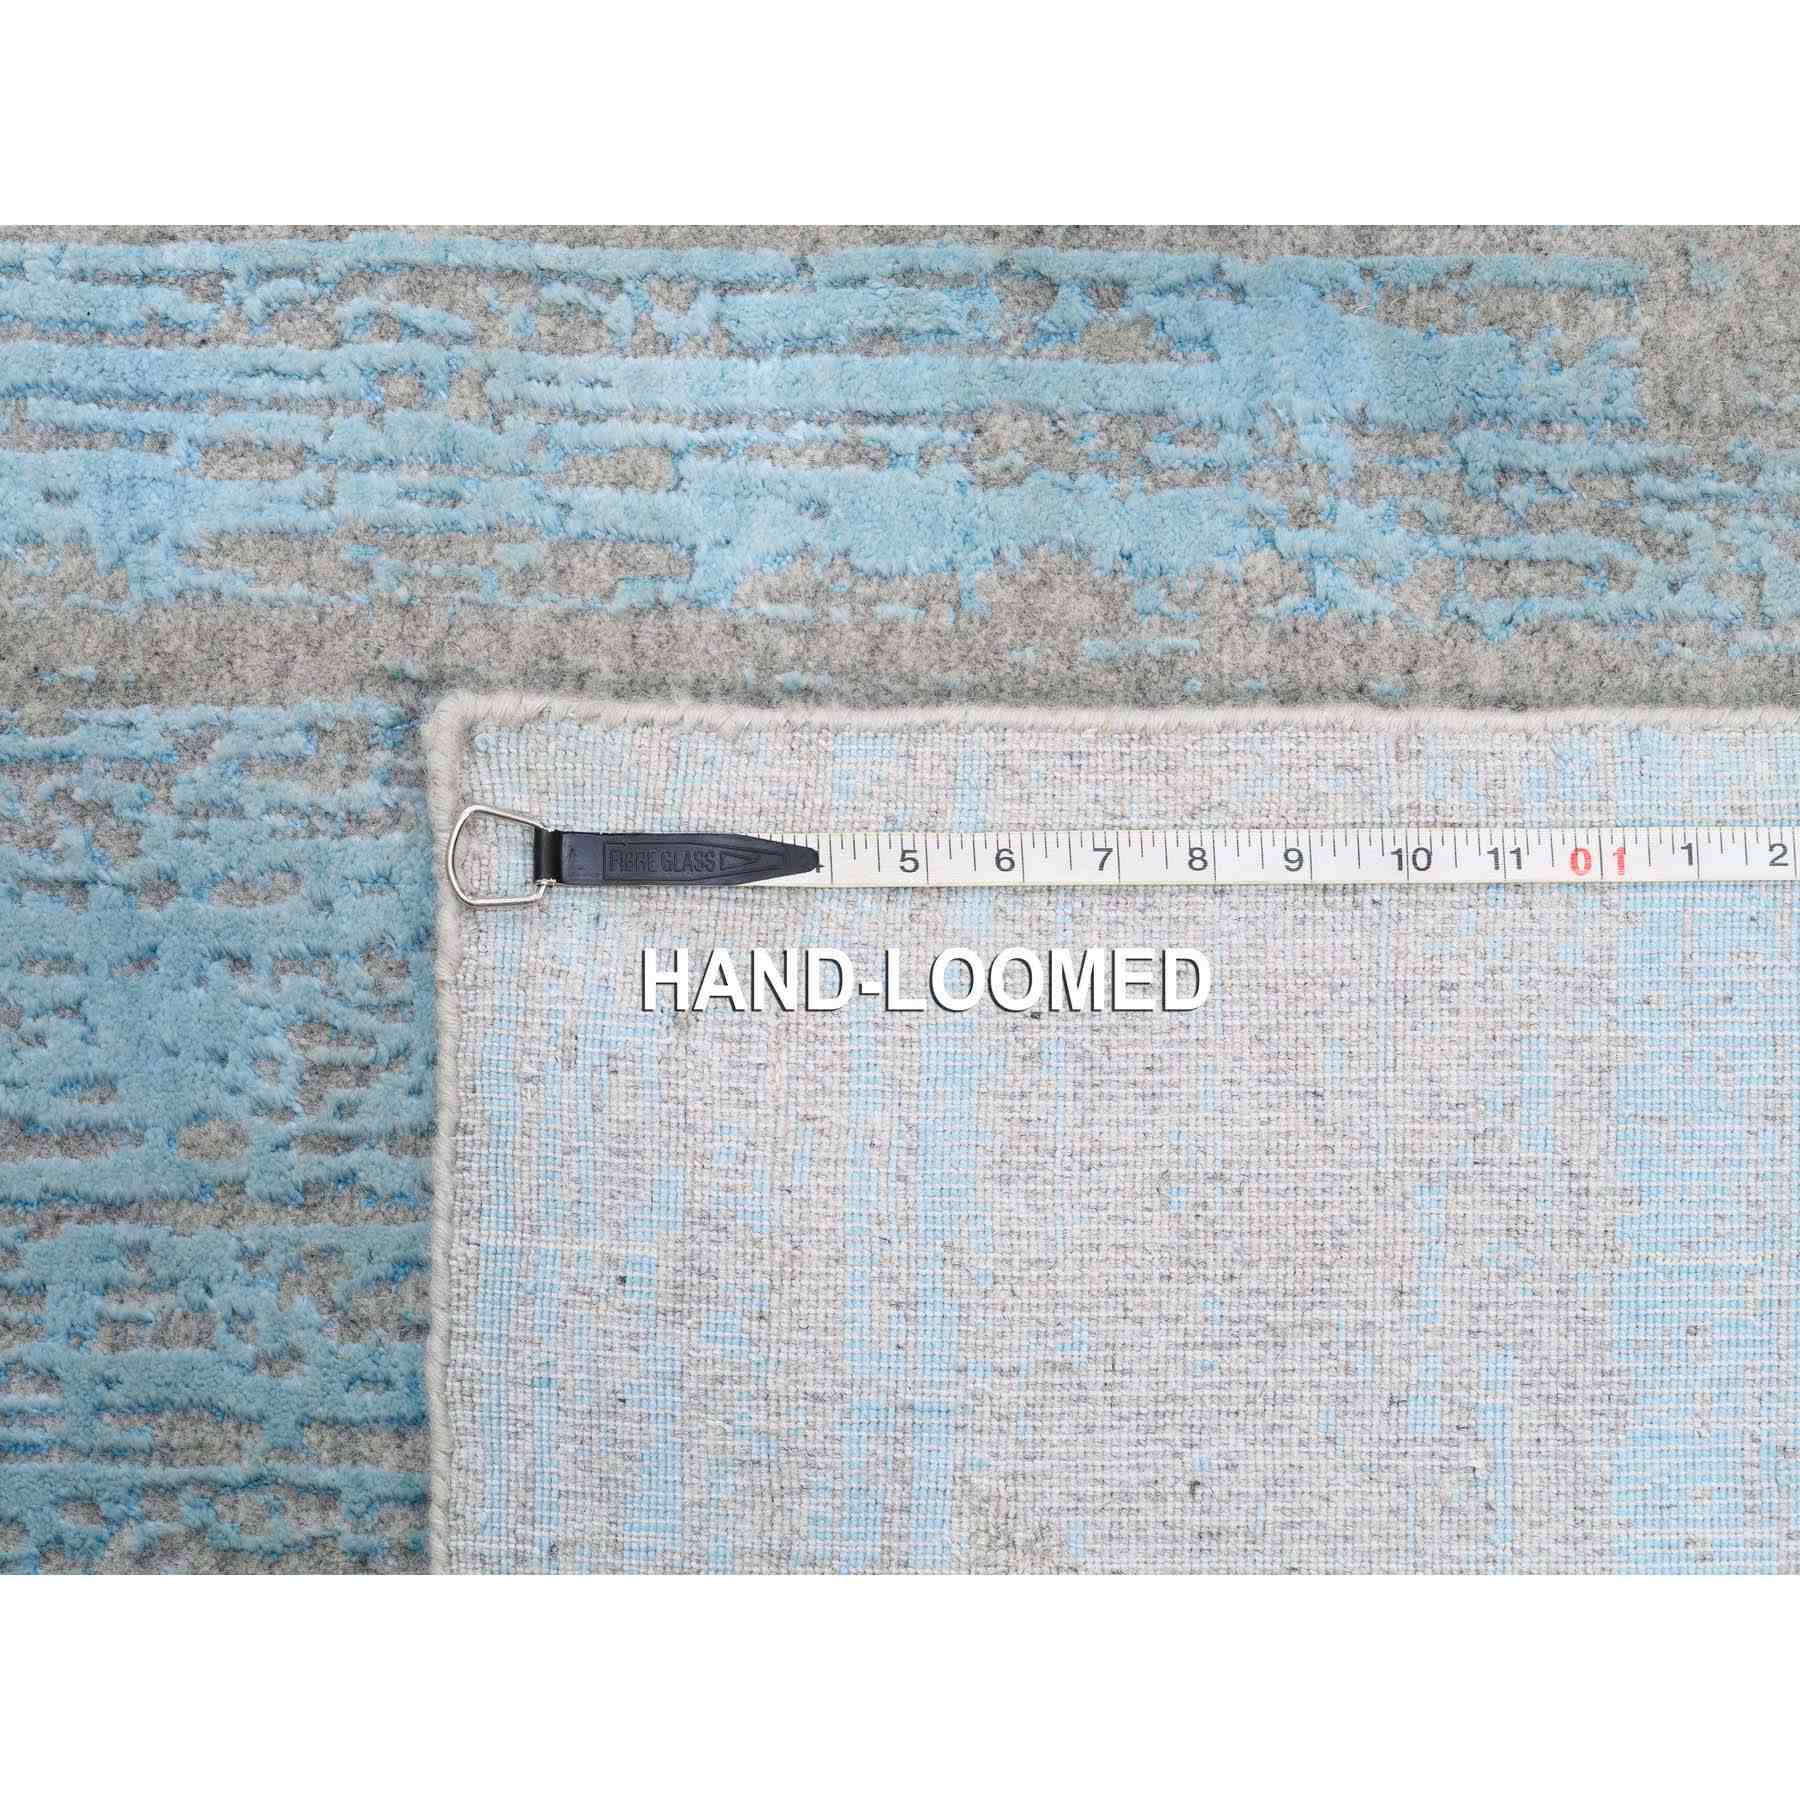 Hand-Loomed-Hand-Loomed-Rug-310580